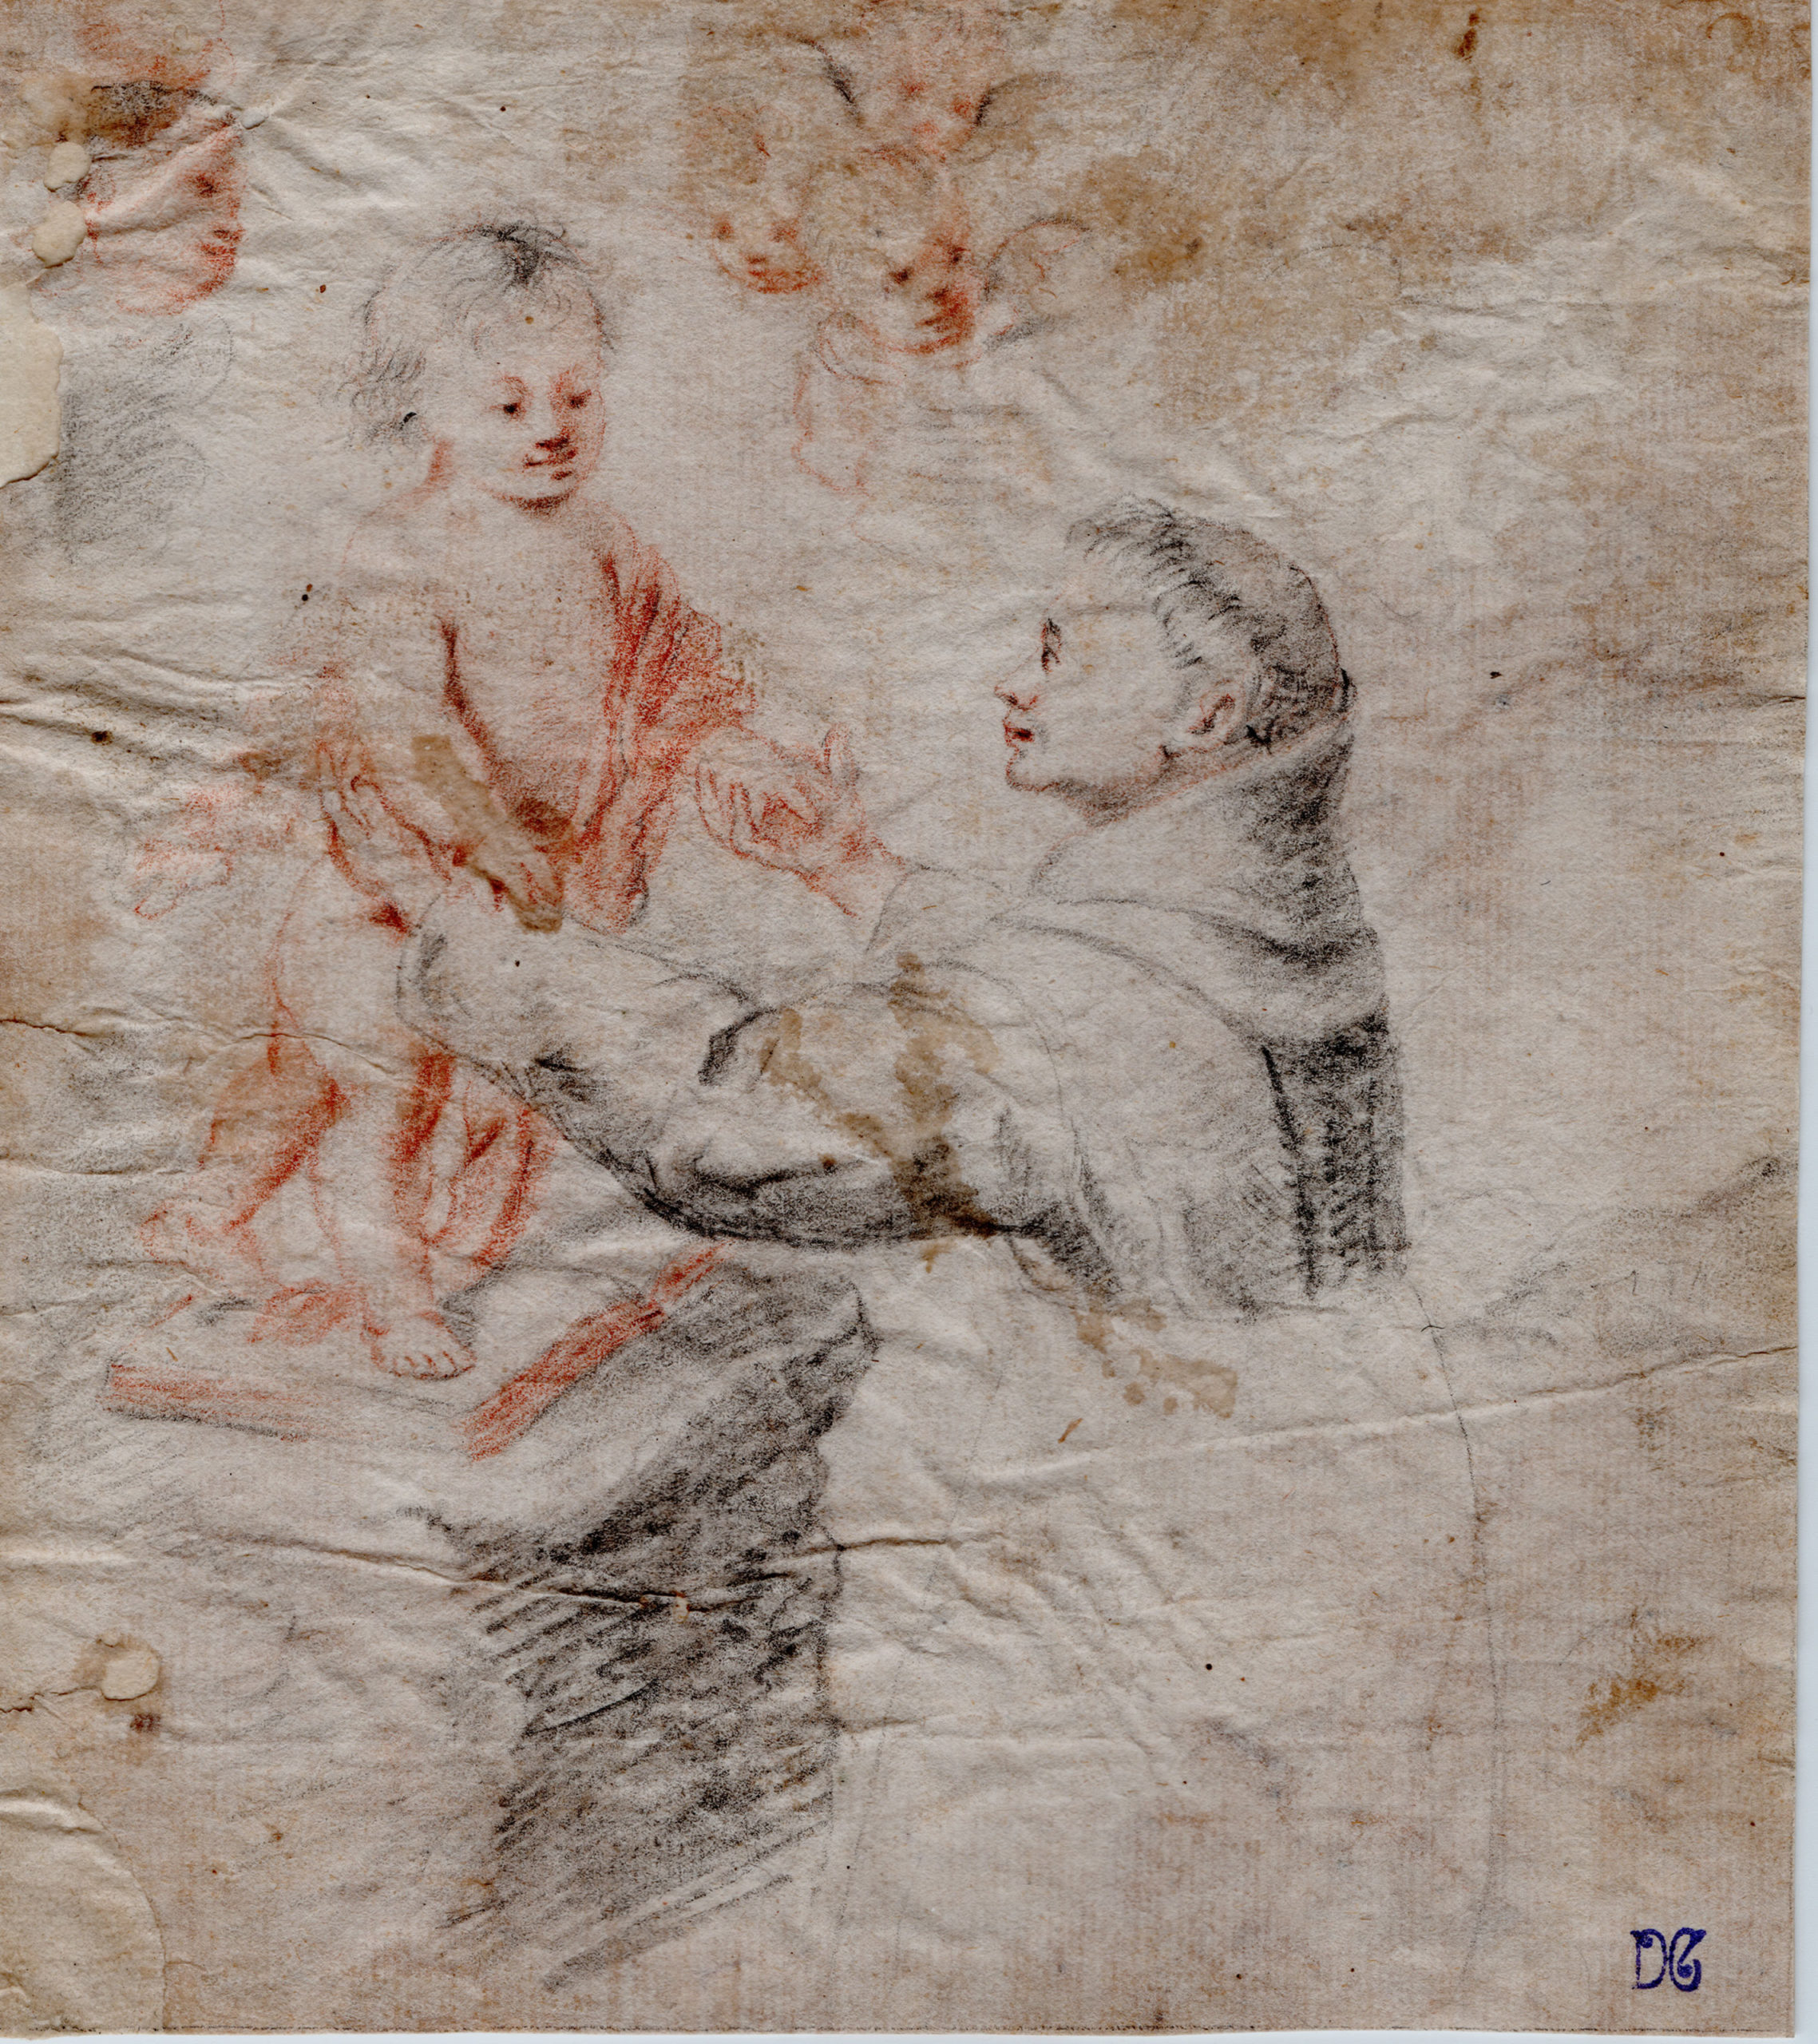 Bartolome Murillo - Aparición del niño a San Padua - pintura y dibujo